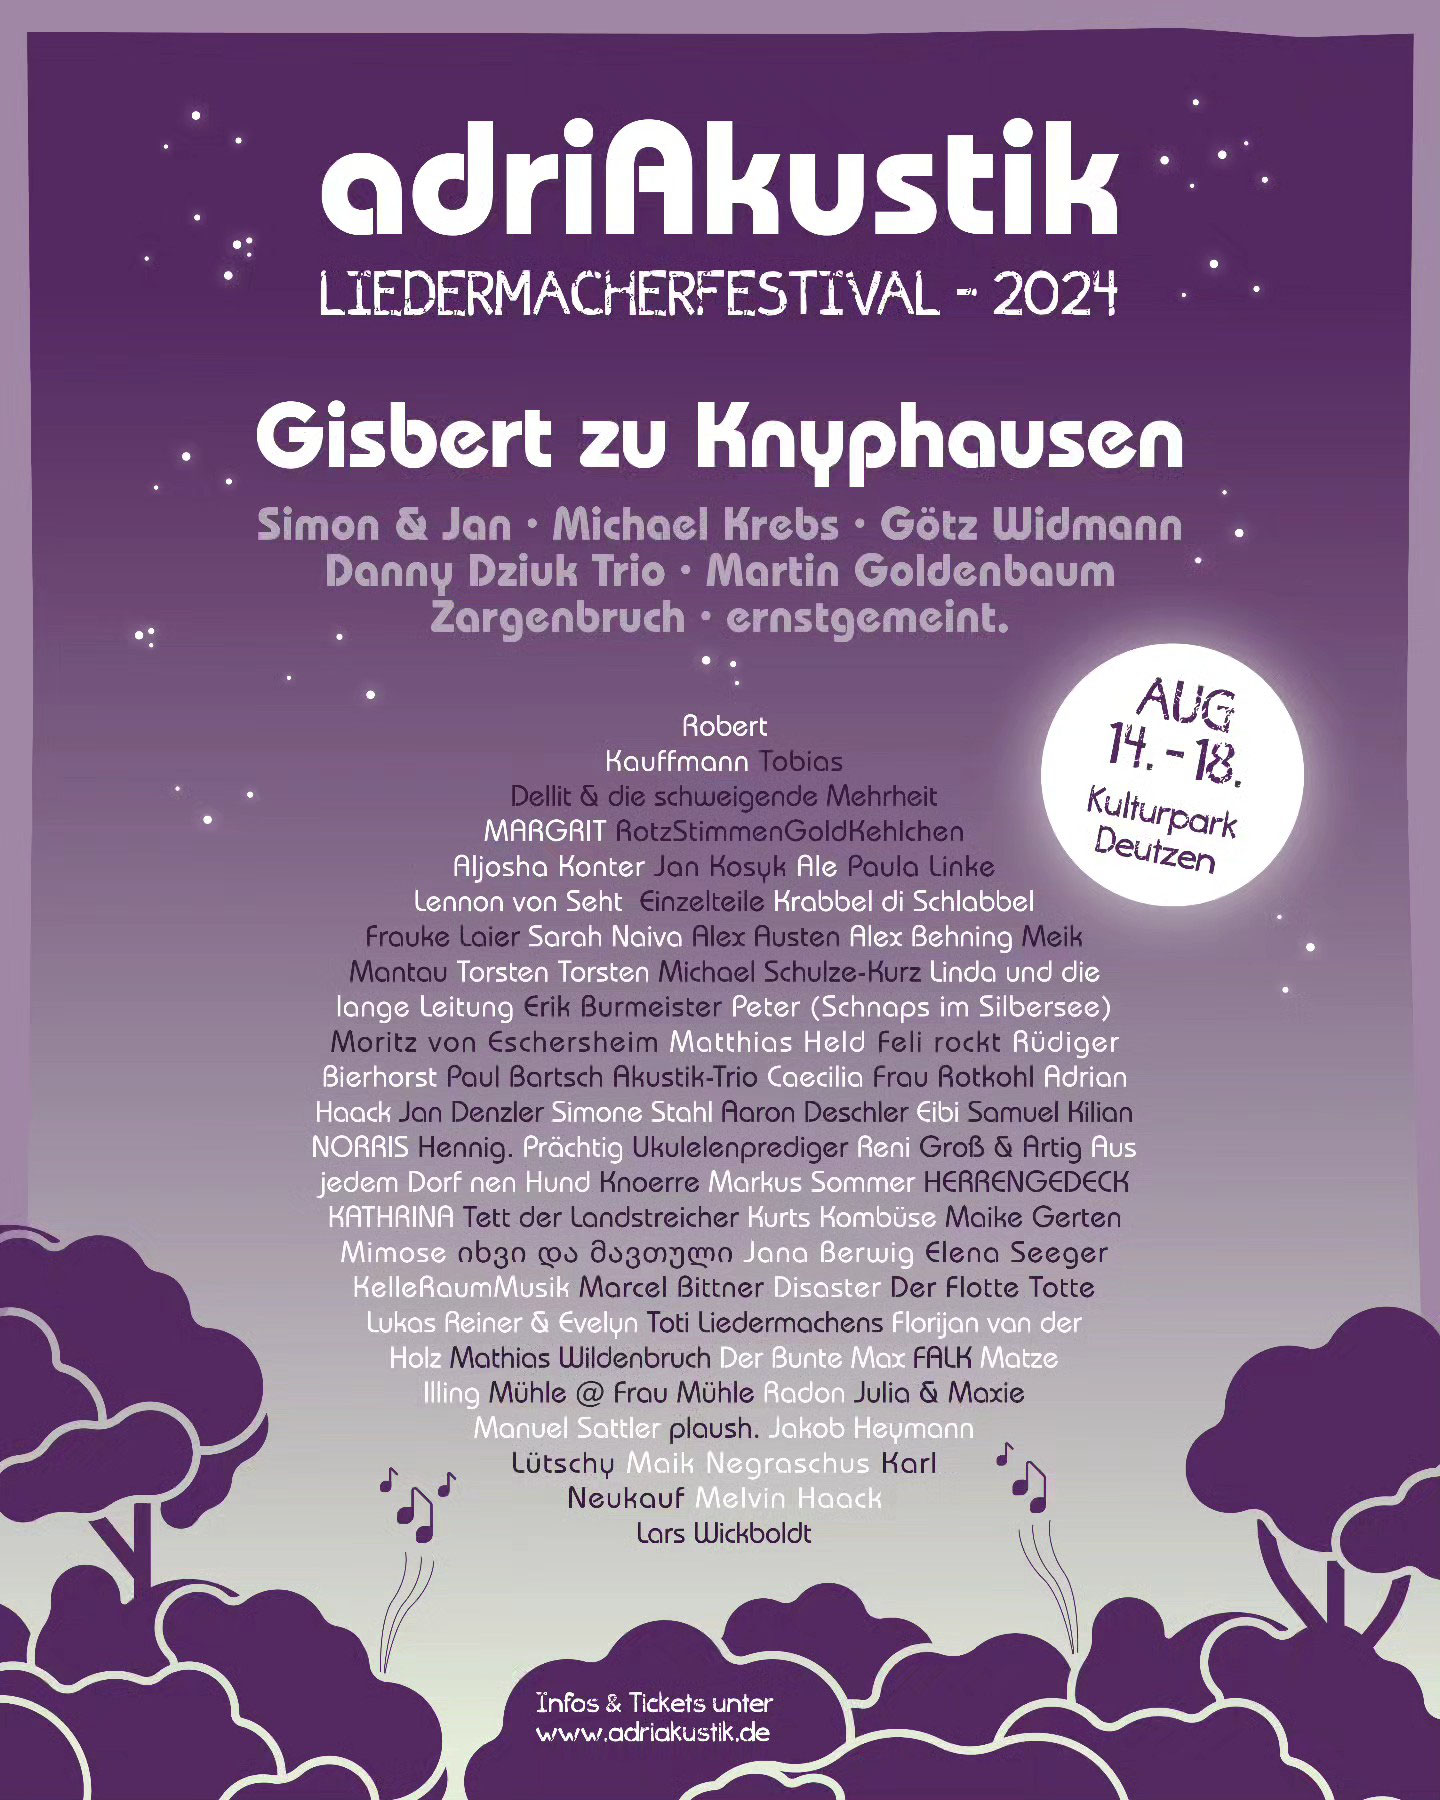 Plakat zum adriAkustik mit den teilnehmenden Musiker·innen